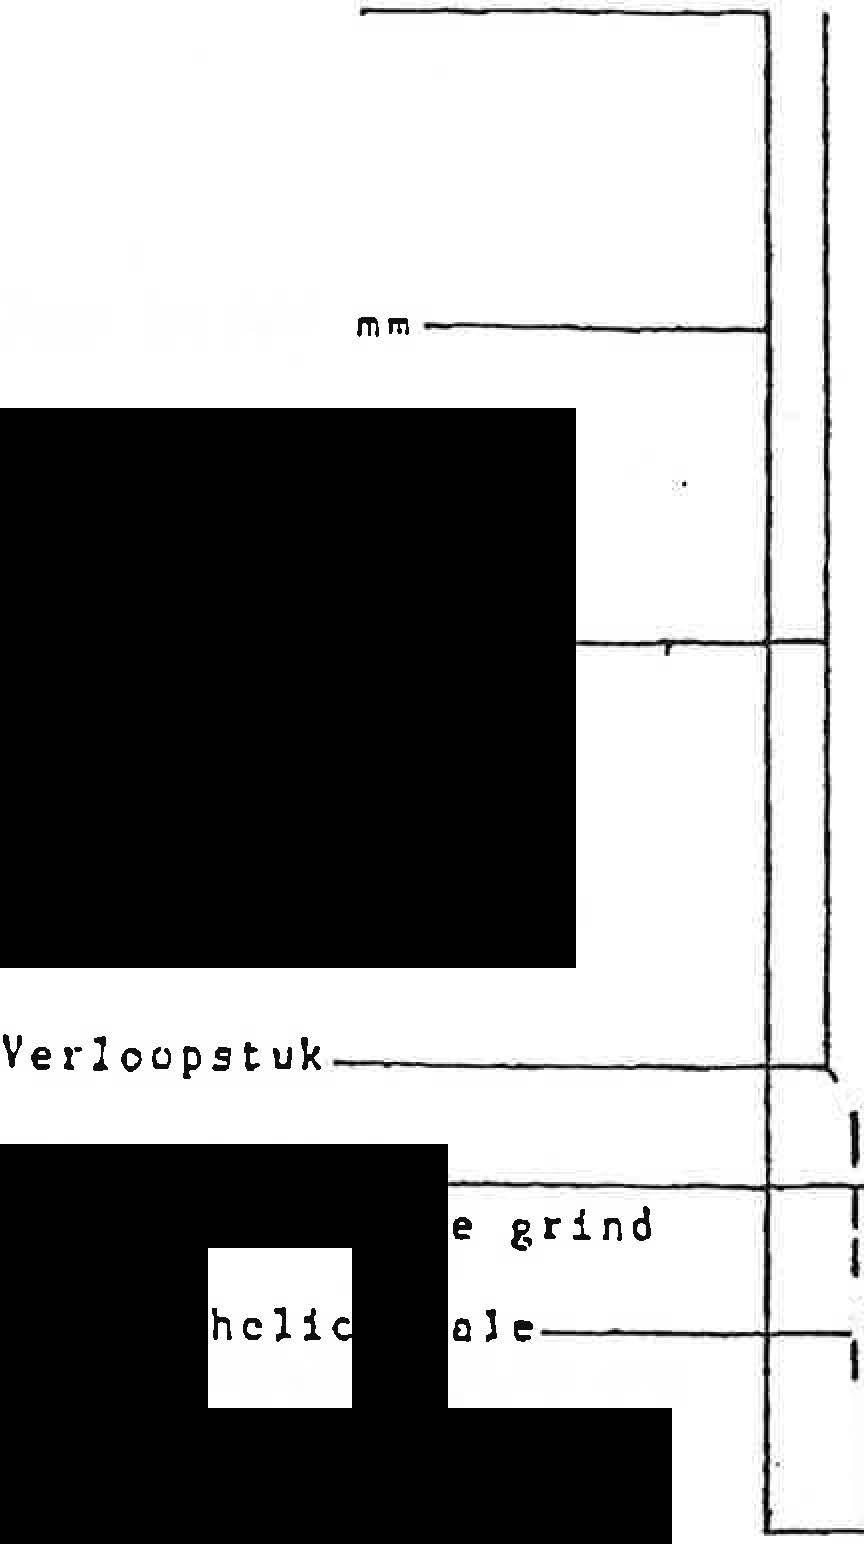 -6- DIERENGENEESKUNDE MERELBEKE 0 ft\ noor. 250 mm ---1 rvc st1jsbuis 115/li,Q mm -- Verloopstuk ---I--'.